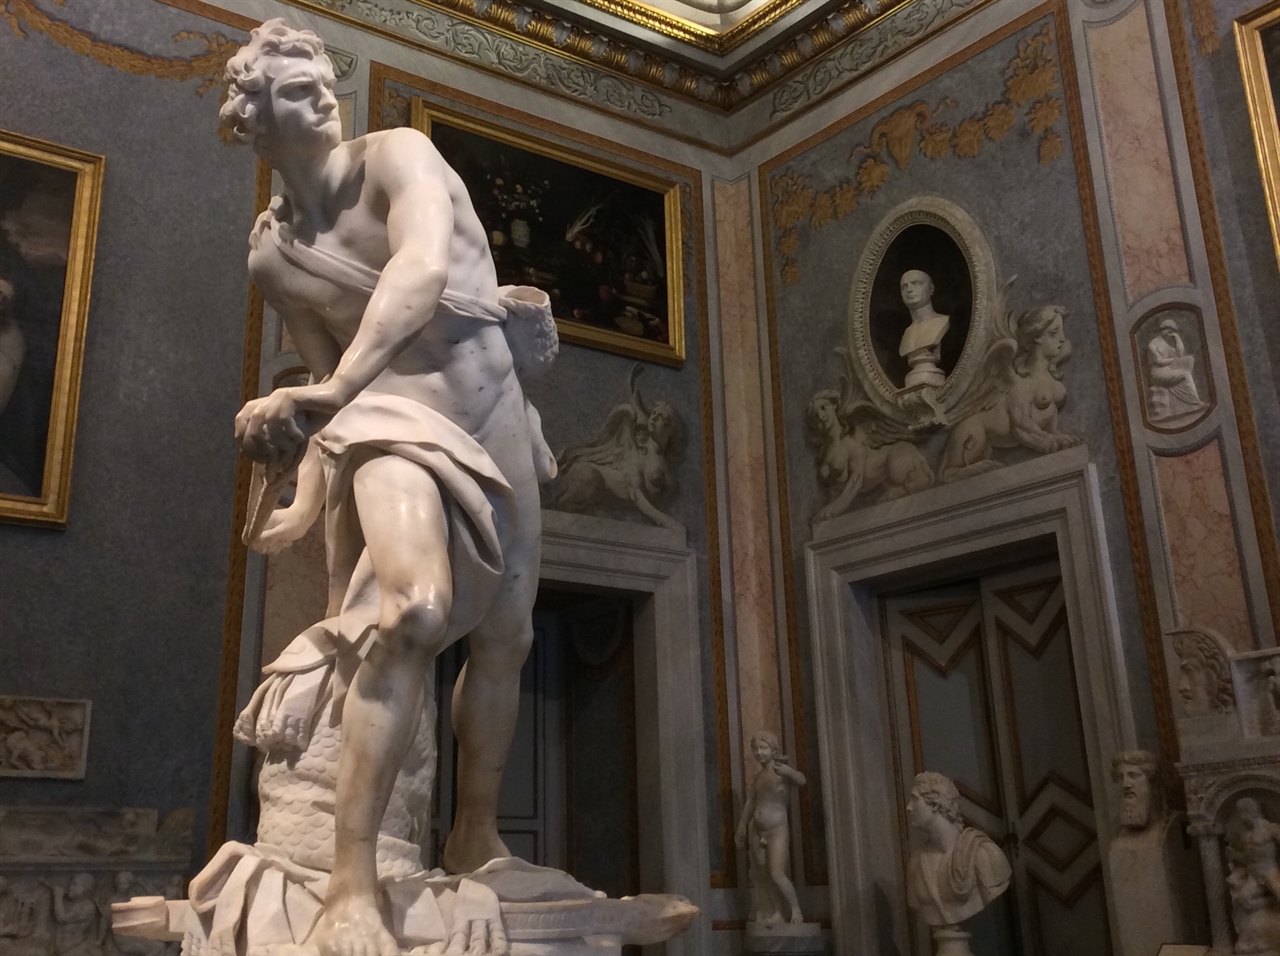 베르니니 '다비드' 로마 보르게세 미술관 (적장 골리앗을 향해 돌팔매를 던지기 위해 몸을 뒤튼 다비드의 모습은 피렌체 아카데미아 미술관에 있는 미켈란젤로의 '다비드'의 속편으로 볼 수 있습니다. 베르니니는 훨씬 더 역동적인 모습으로 이미 신화화된 미켈란젤로의 '다비드'를 오마주한 것입니다.) 